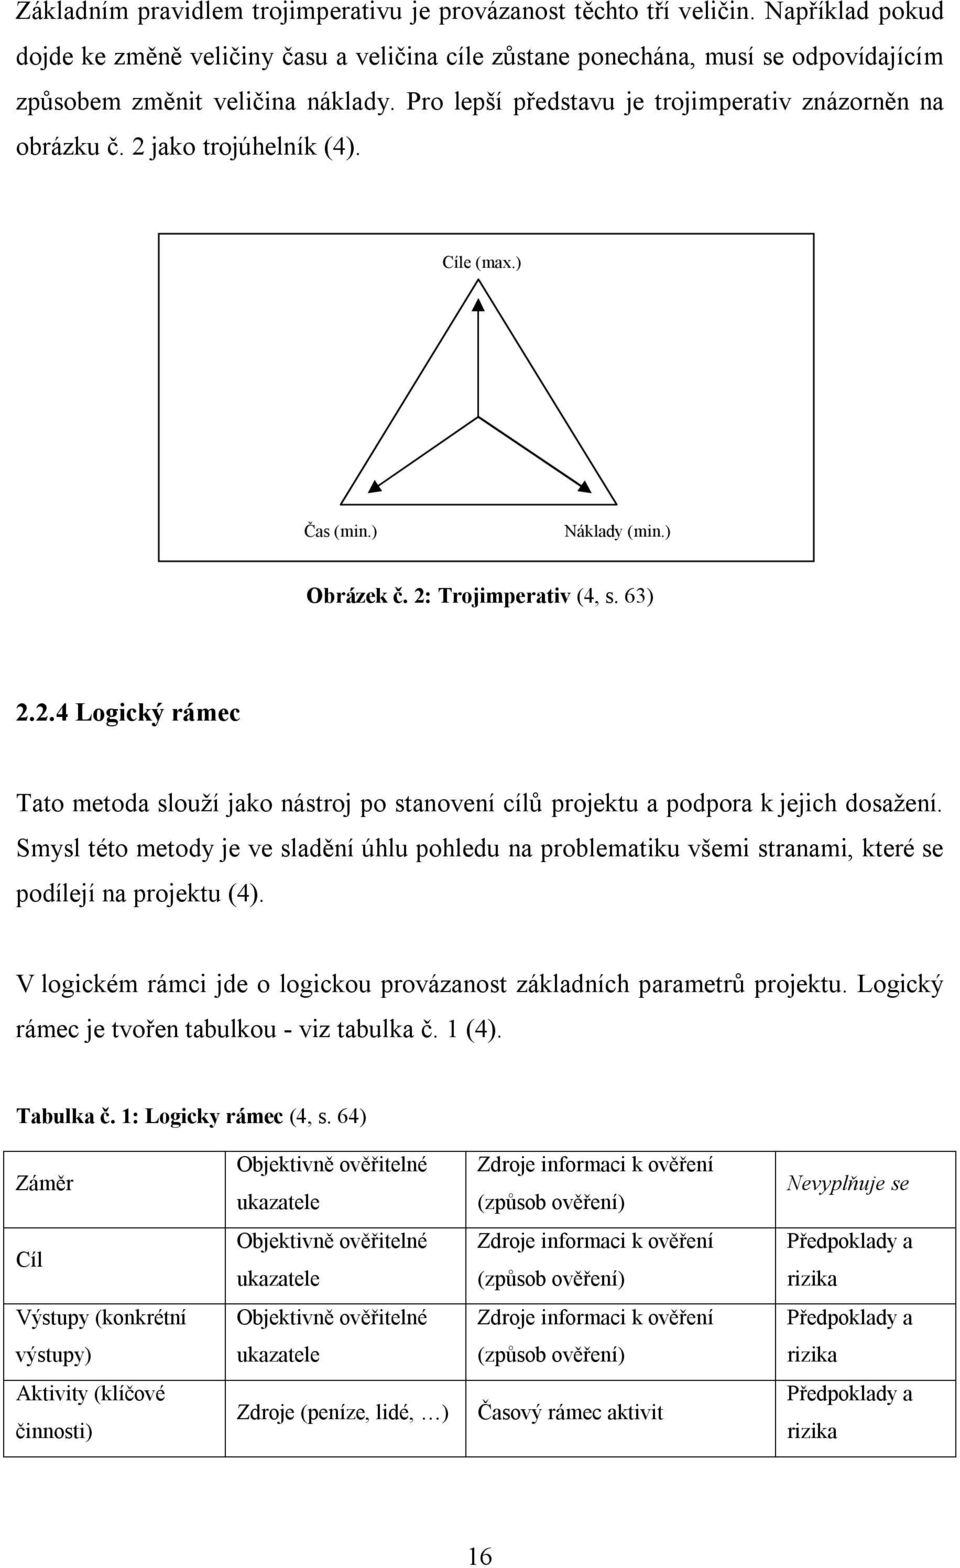 2 jako trojúhelník (4). Cíle (max.) Čas (min.) Náklady (min.) Obrázek č. 2: Trojimperativ (4, s. 63) 2.2.4 Logický rámec Tato metoda slouží jako nástroj po stanovení cílů projektu a podpora k jejich dosažení.